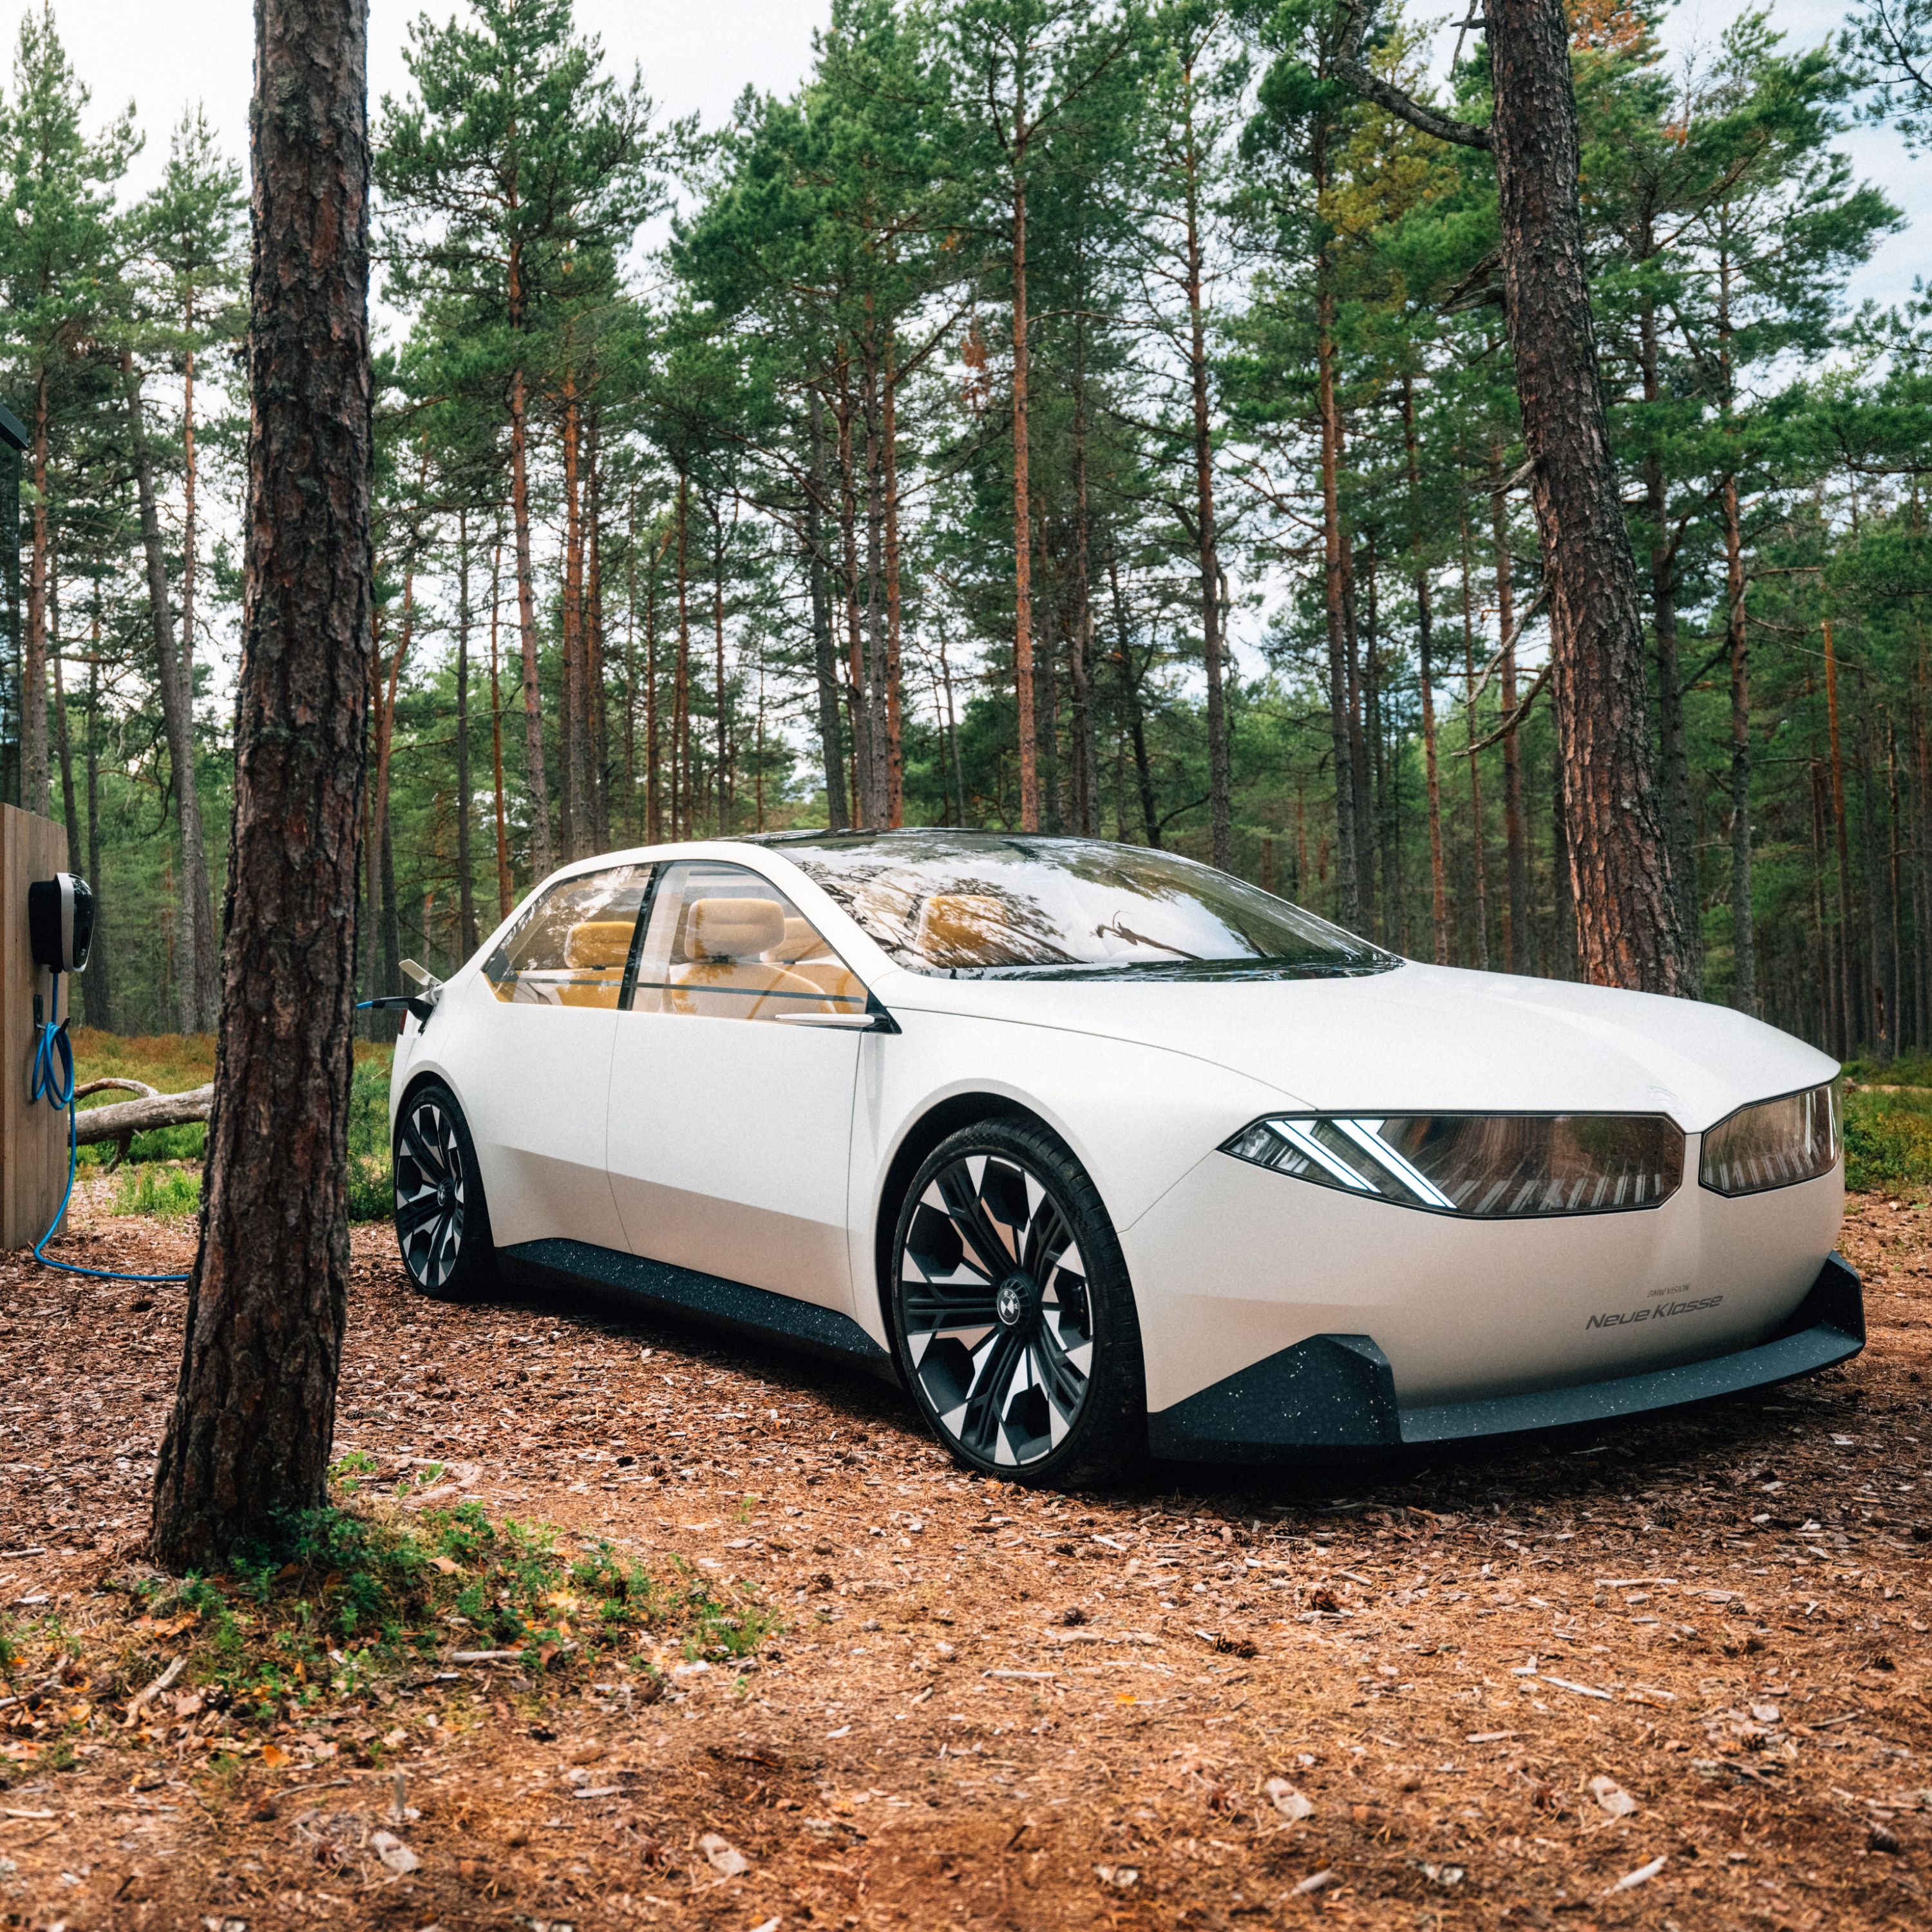 BMW Vision Neue Klasse, viatura Concept, 2023, exterior, perspetiva lateral a 2/3, em movimento numa floresta